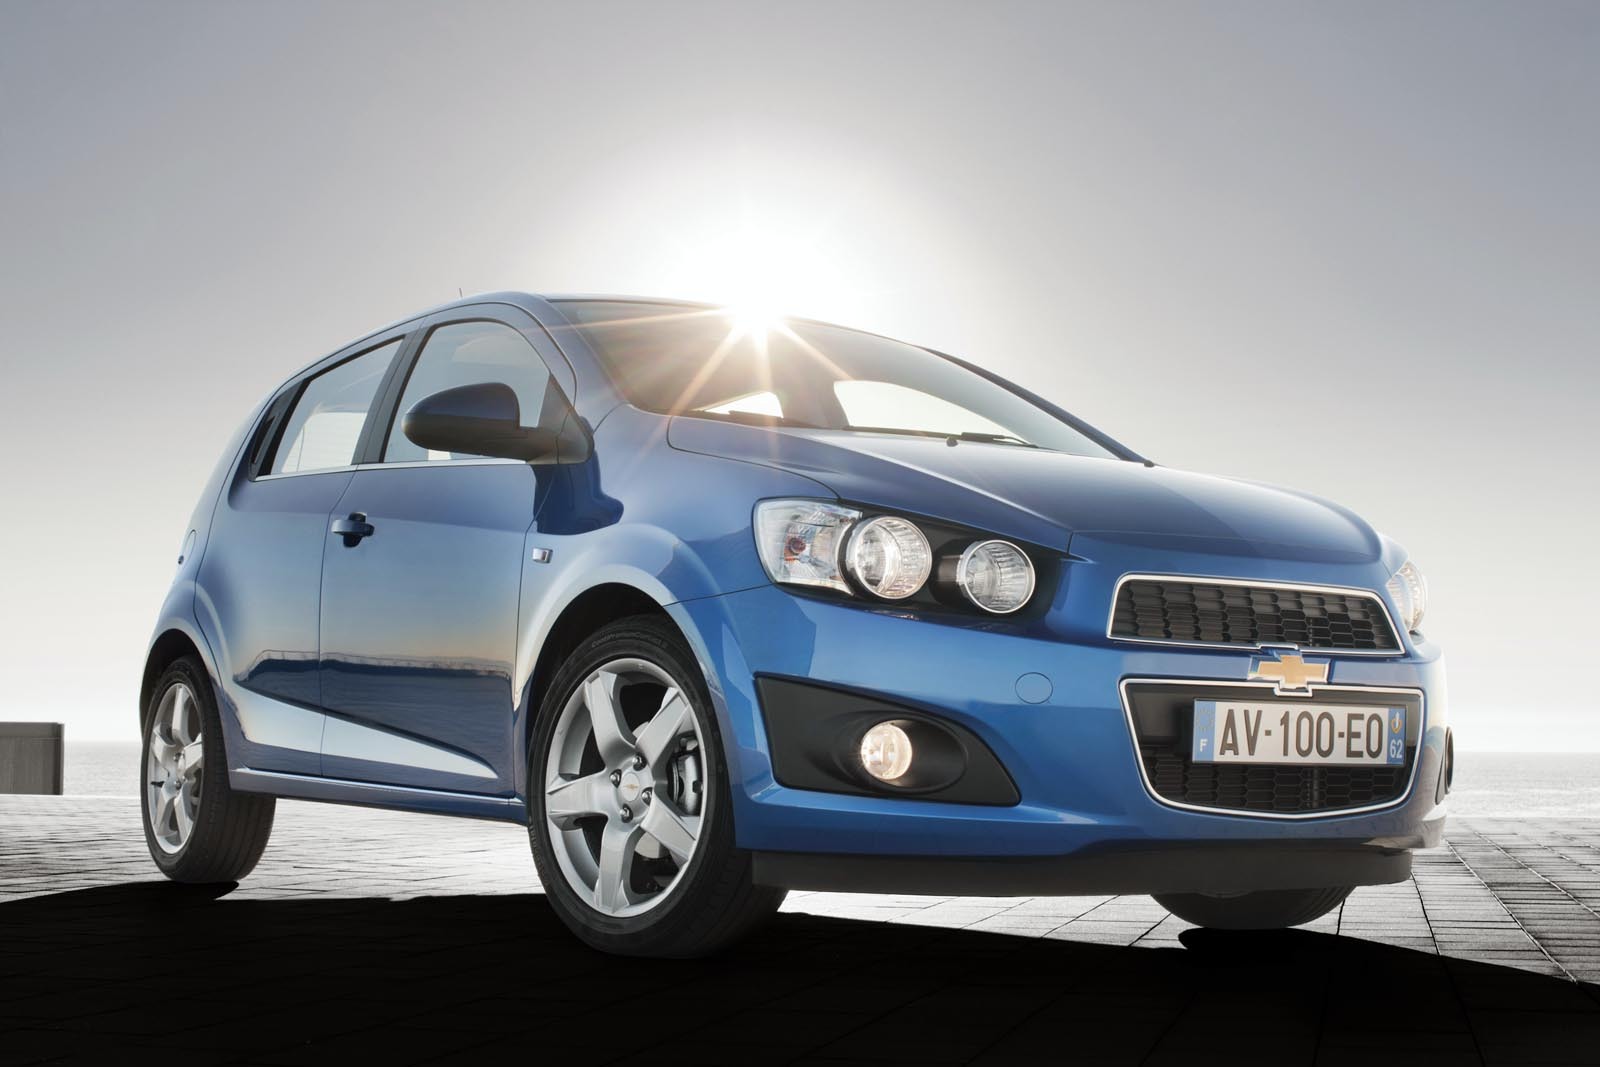 Versiunea Chevrolet Aveo 1.3D ECO anunta emisii CO2 de numai 95 g/km